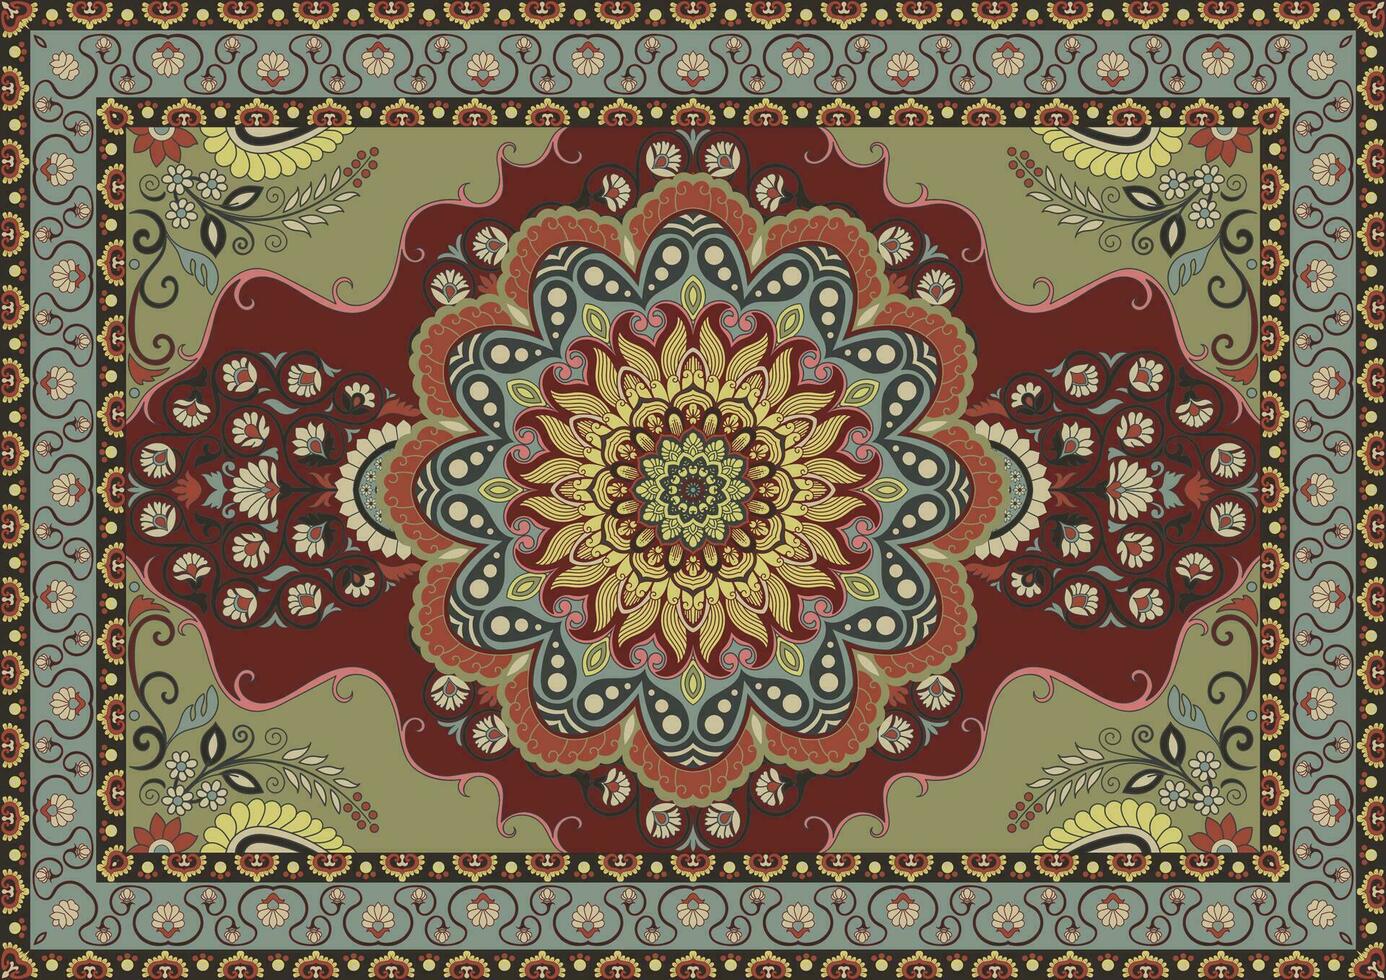 Dom y flor alfombra. persa alfombra. piso alfombras vector